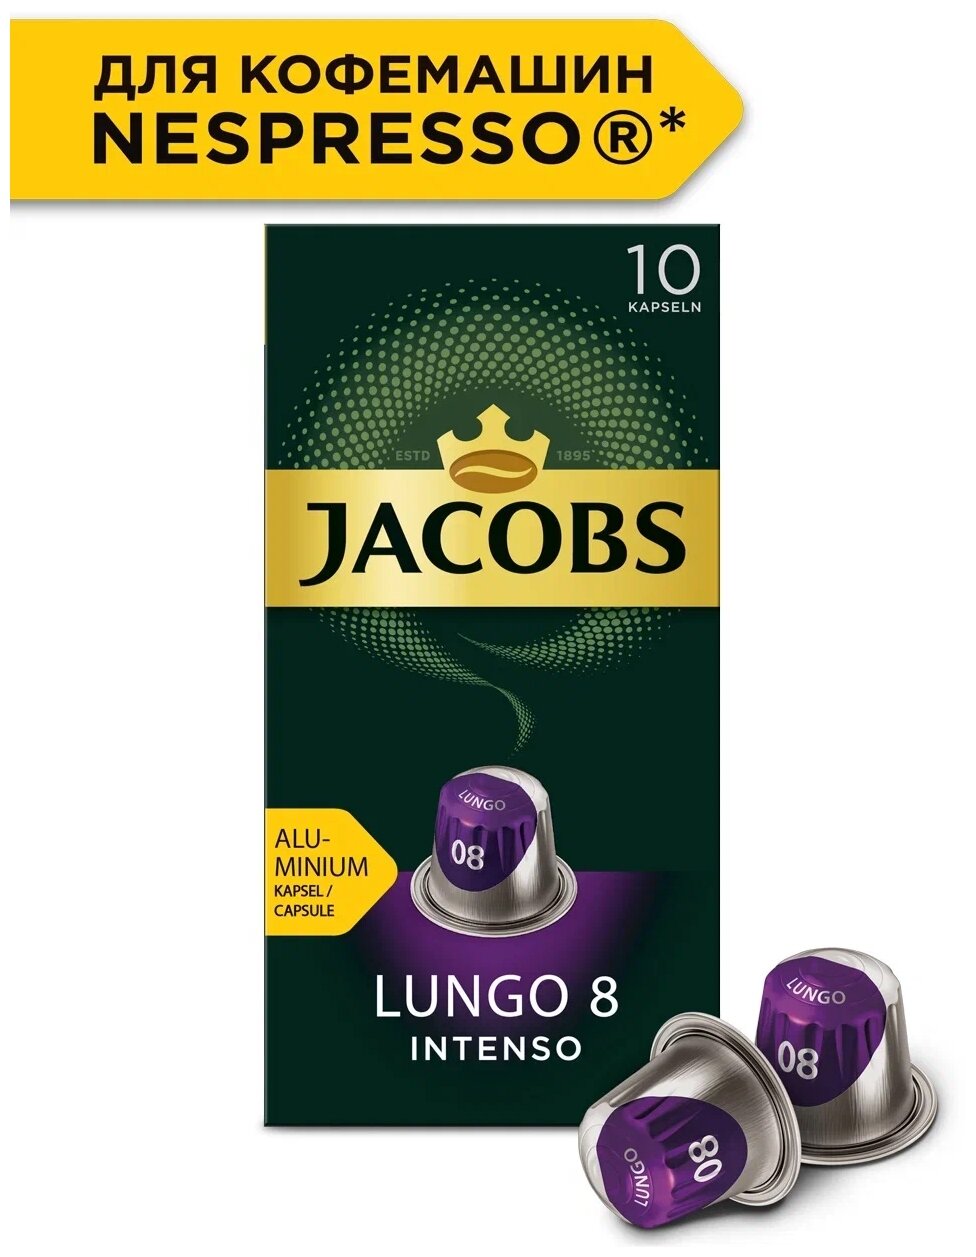 Спайка Набор Кофе в алюминиевых капсулах Jacobs Lungo #8 Intenso, 10 упаковок по 10 капсул(100 капсул) - фотография № 2